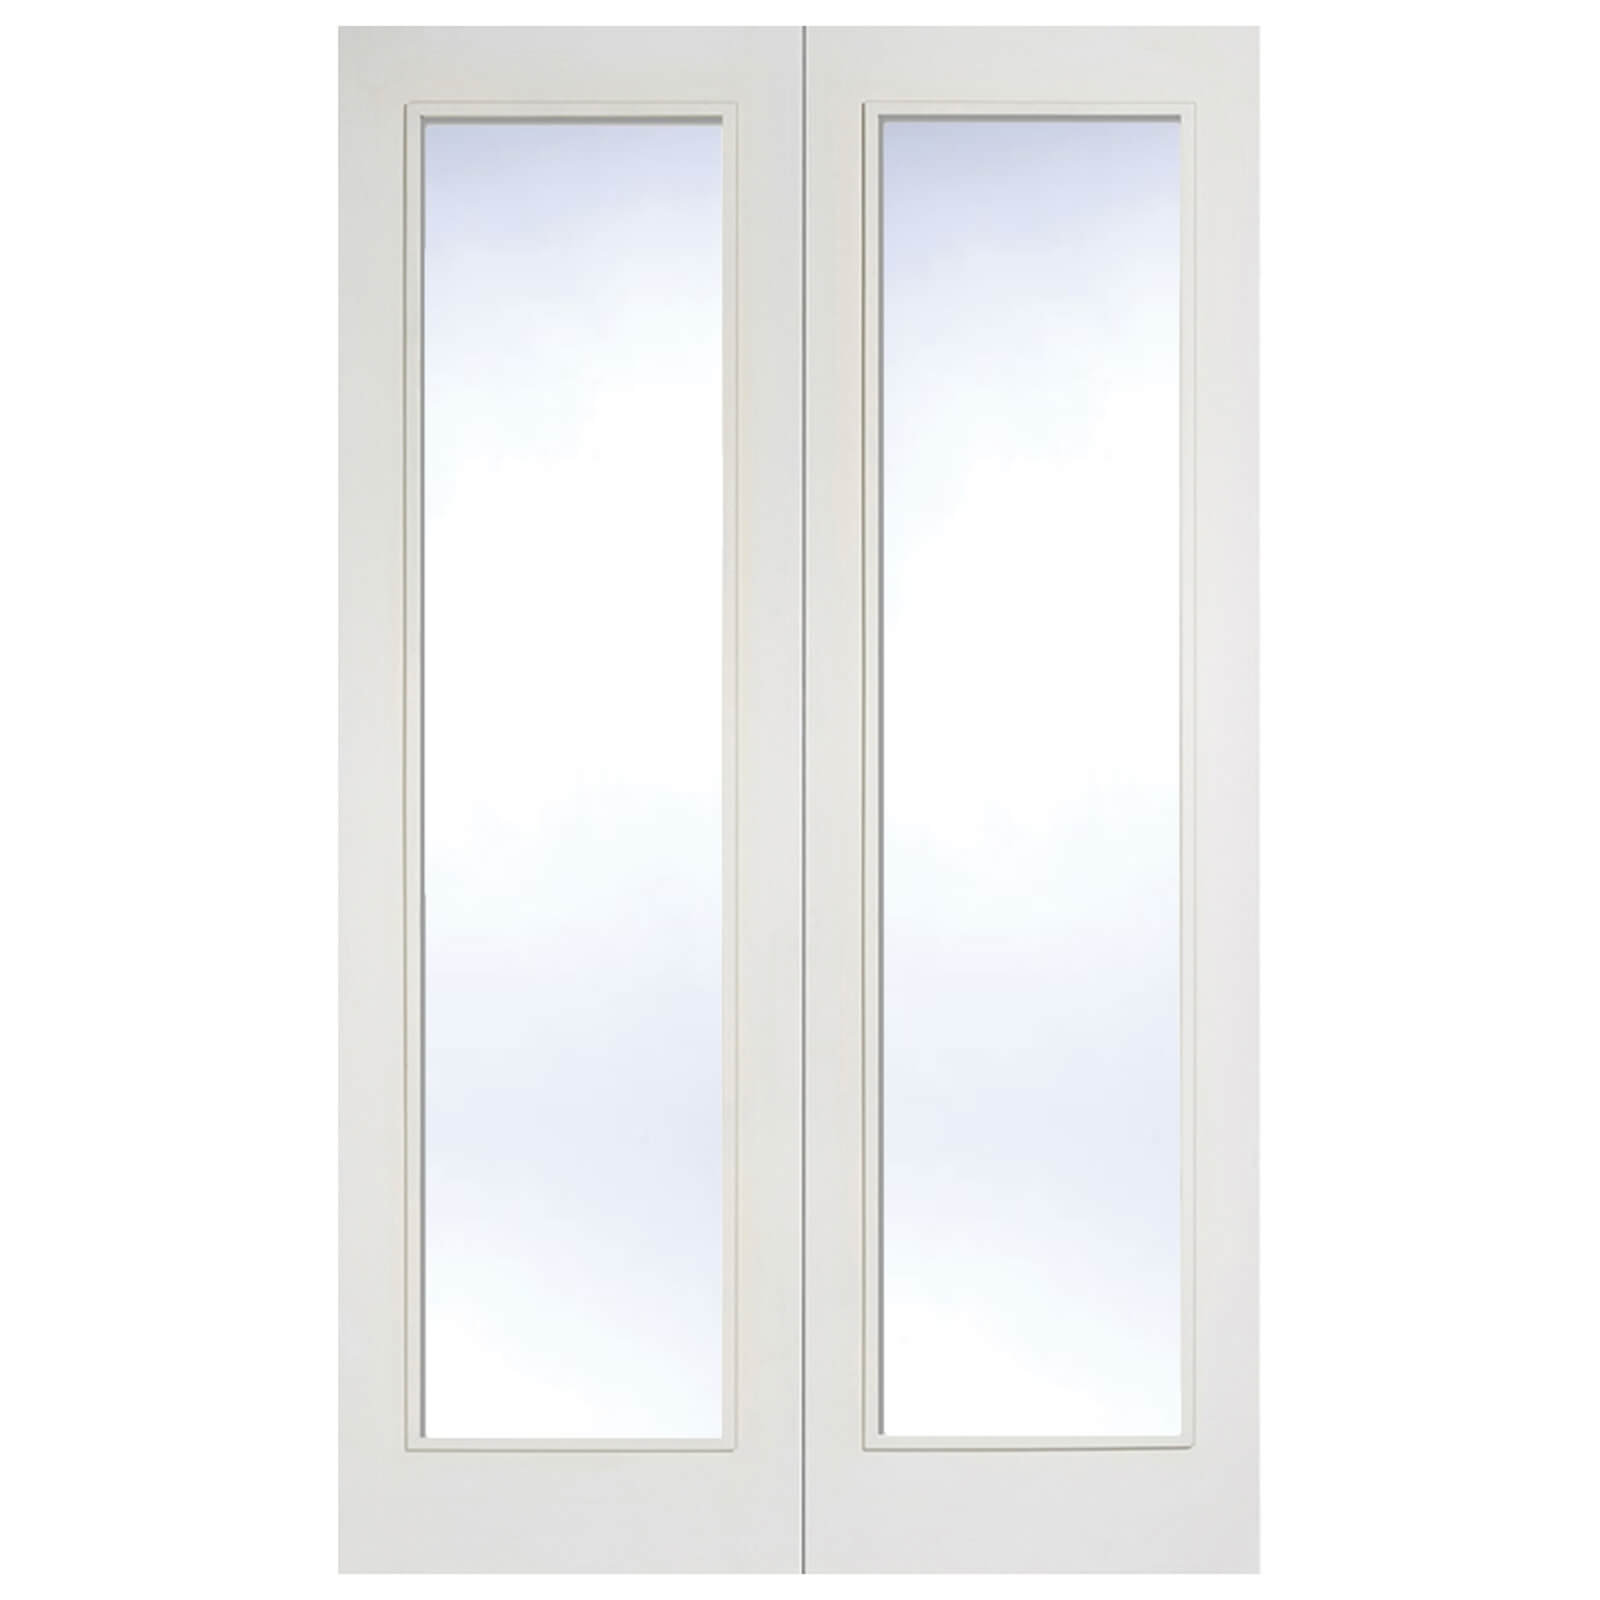 Pattern 20 Internal Glazed Primed White 1 Lite Pair Doors - 1524 x 1981mm